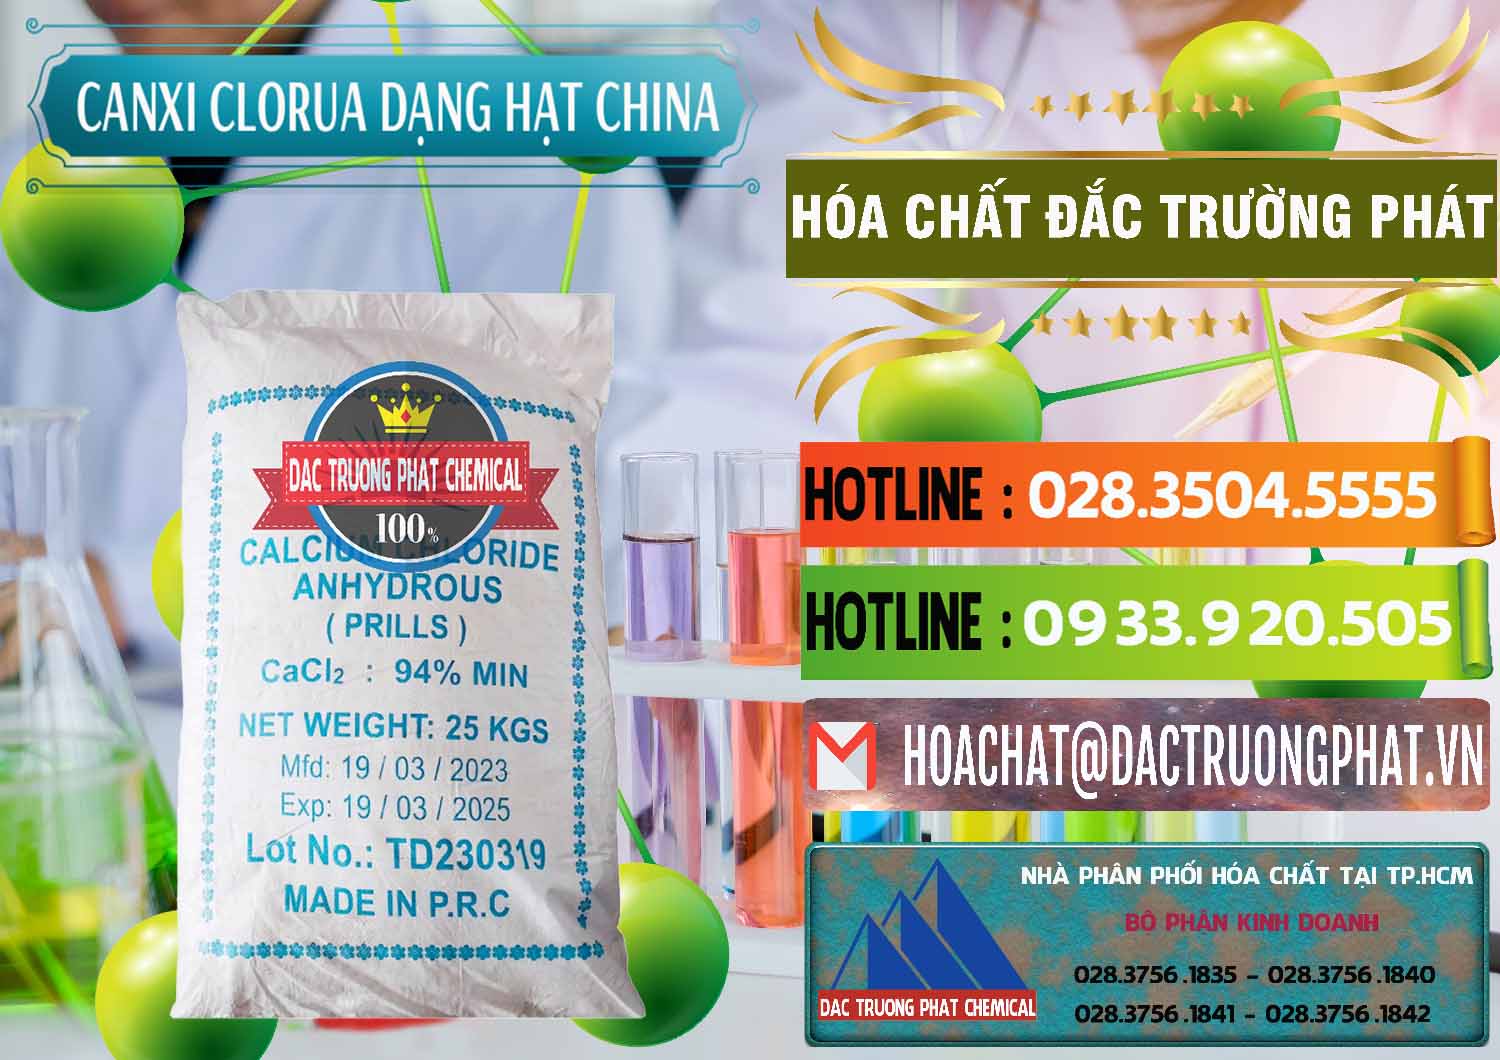 Cty kinh doanh _ bán CaCl2 – Canxi Clorua 94% Dạng Hạt Trung Quốc China - 0373 - Phân phối & cung ứng hóa chất tại TP.HCM - cungcaphoachat.com.vn